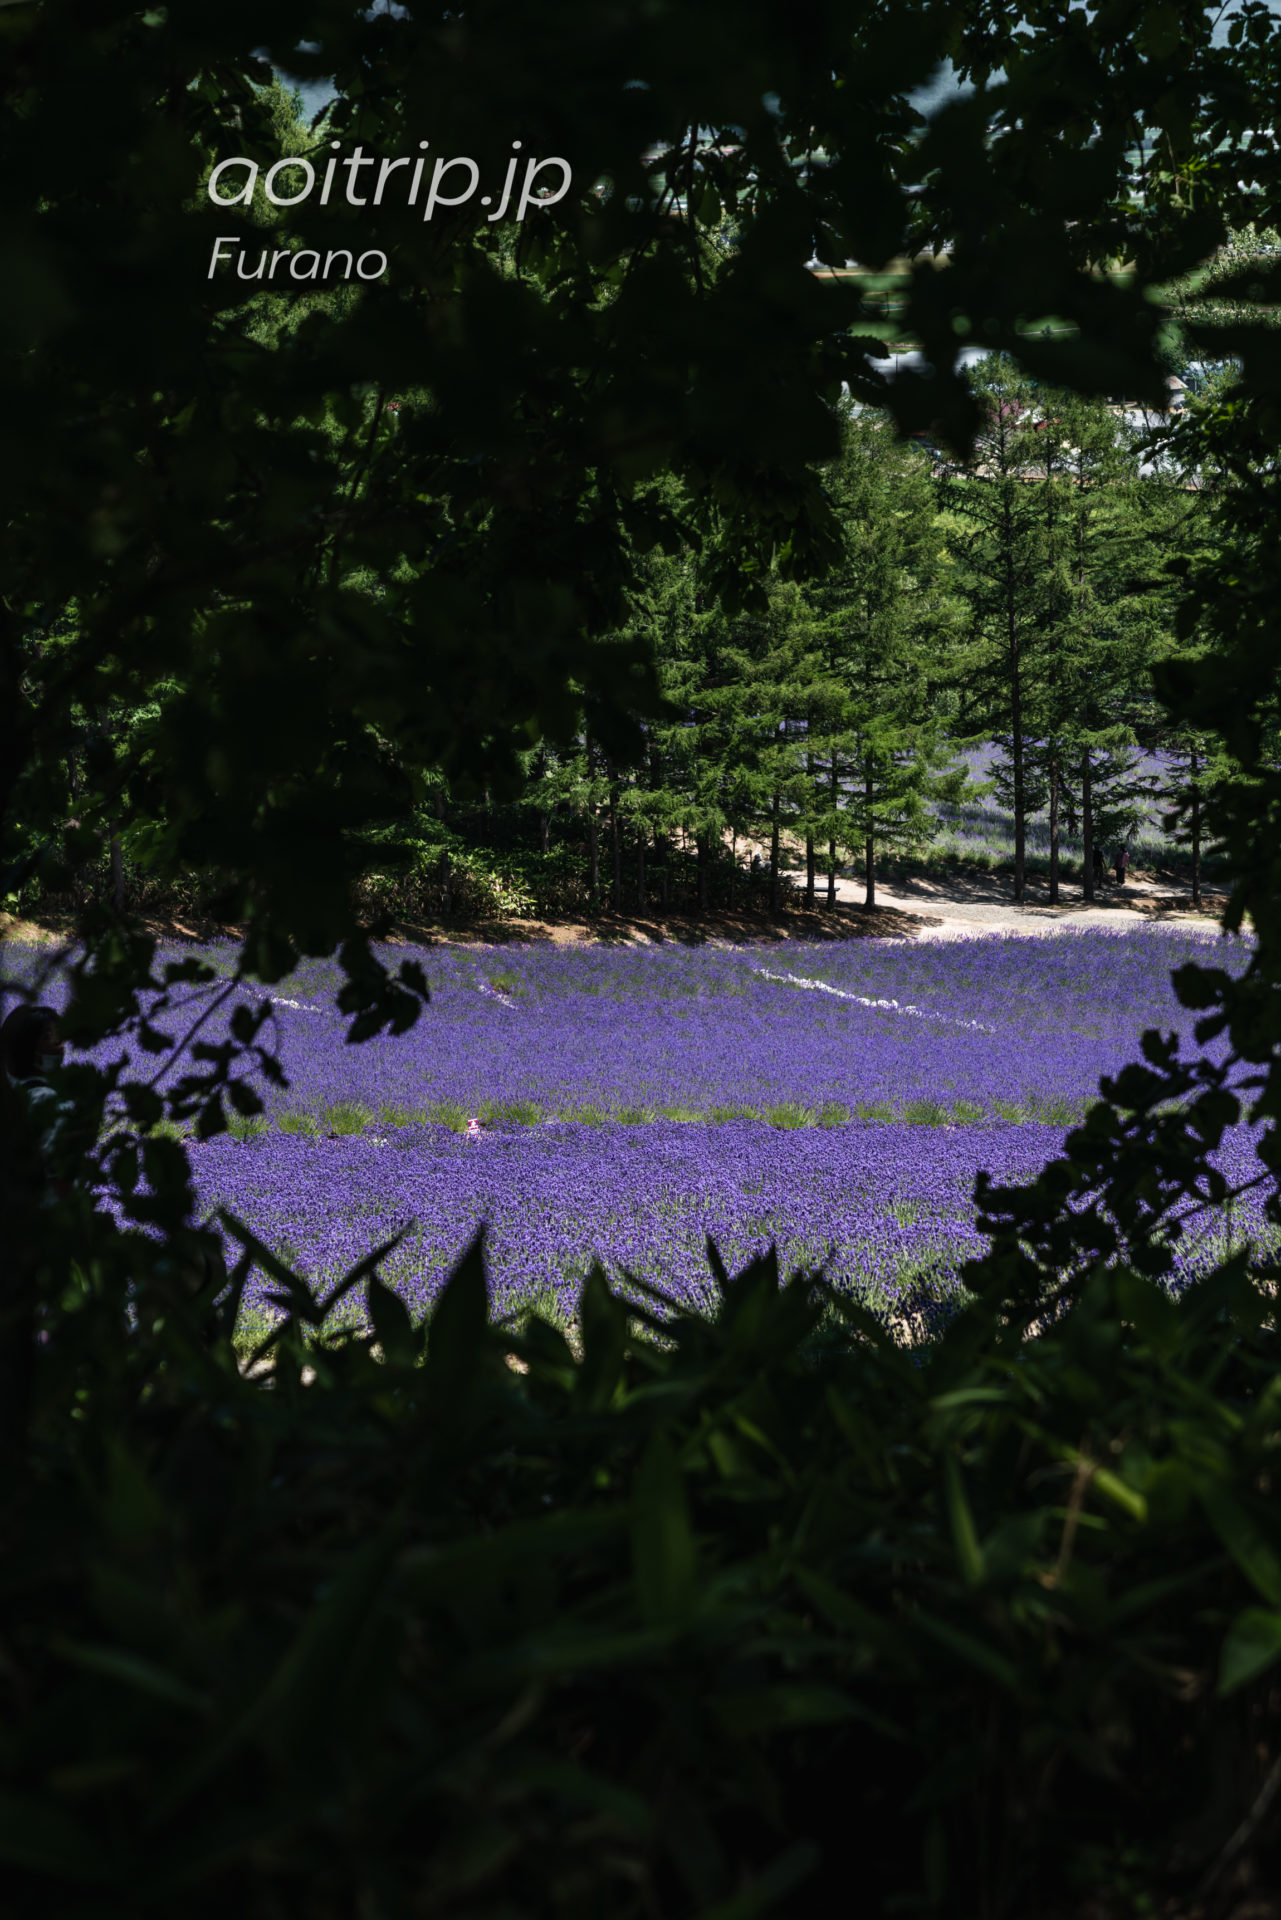 ファーム富田ラベンダー畑 Farm Tomita トラディショナル ラベンダー畑 Traditional Lavender Field